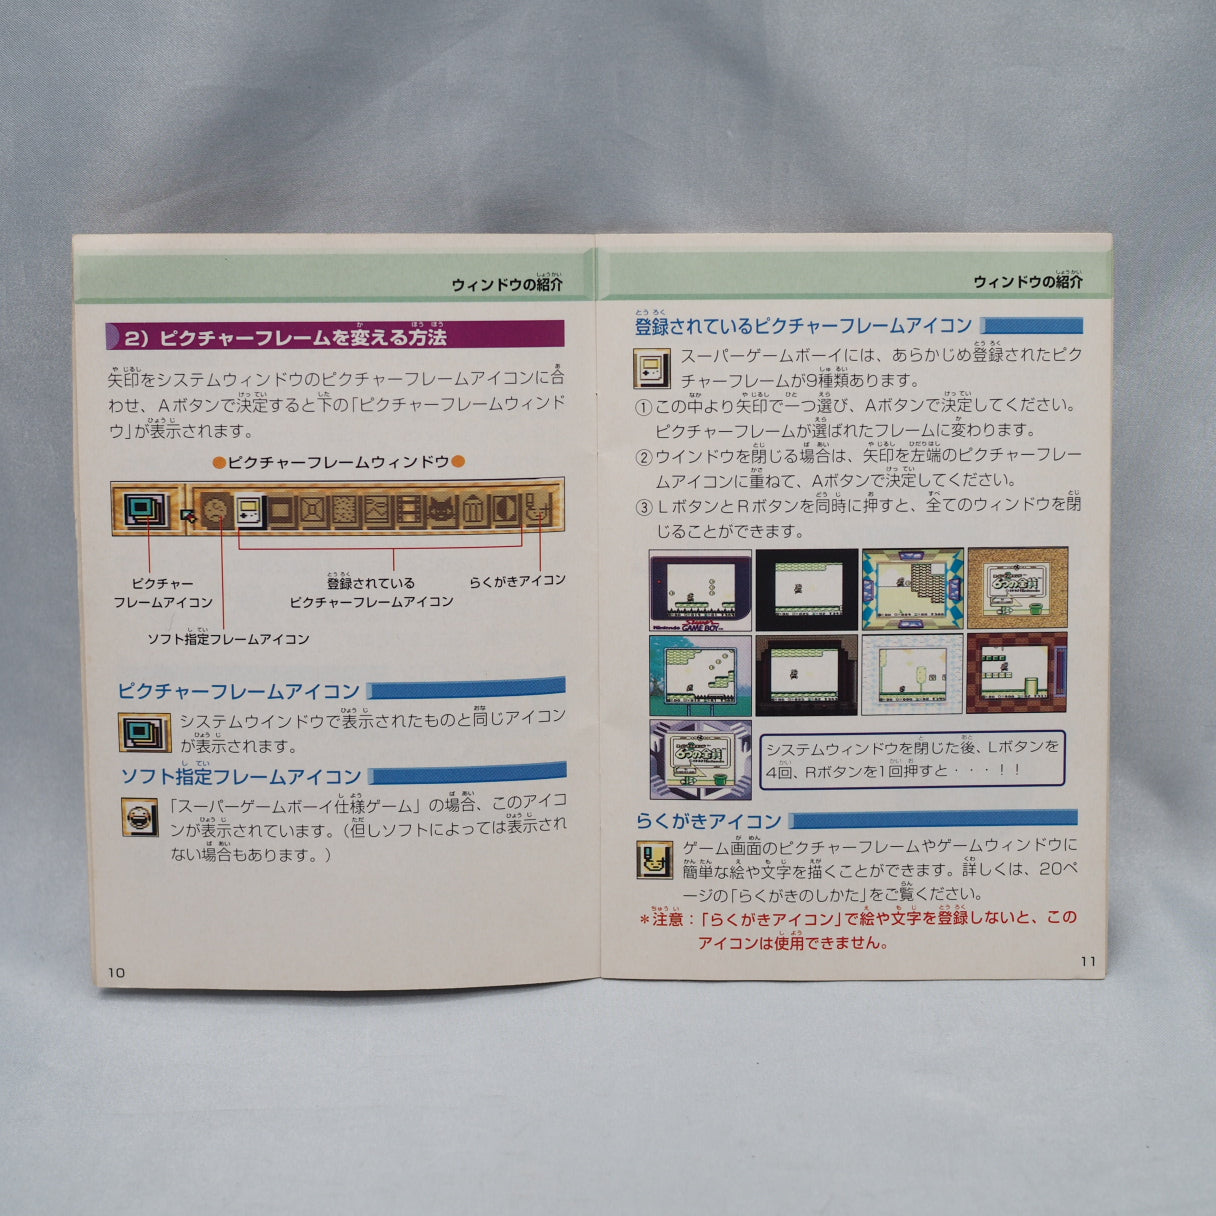 Super GAME BOY [for Nintendo Super Famicom] No.1